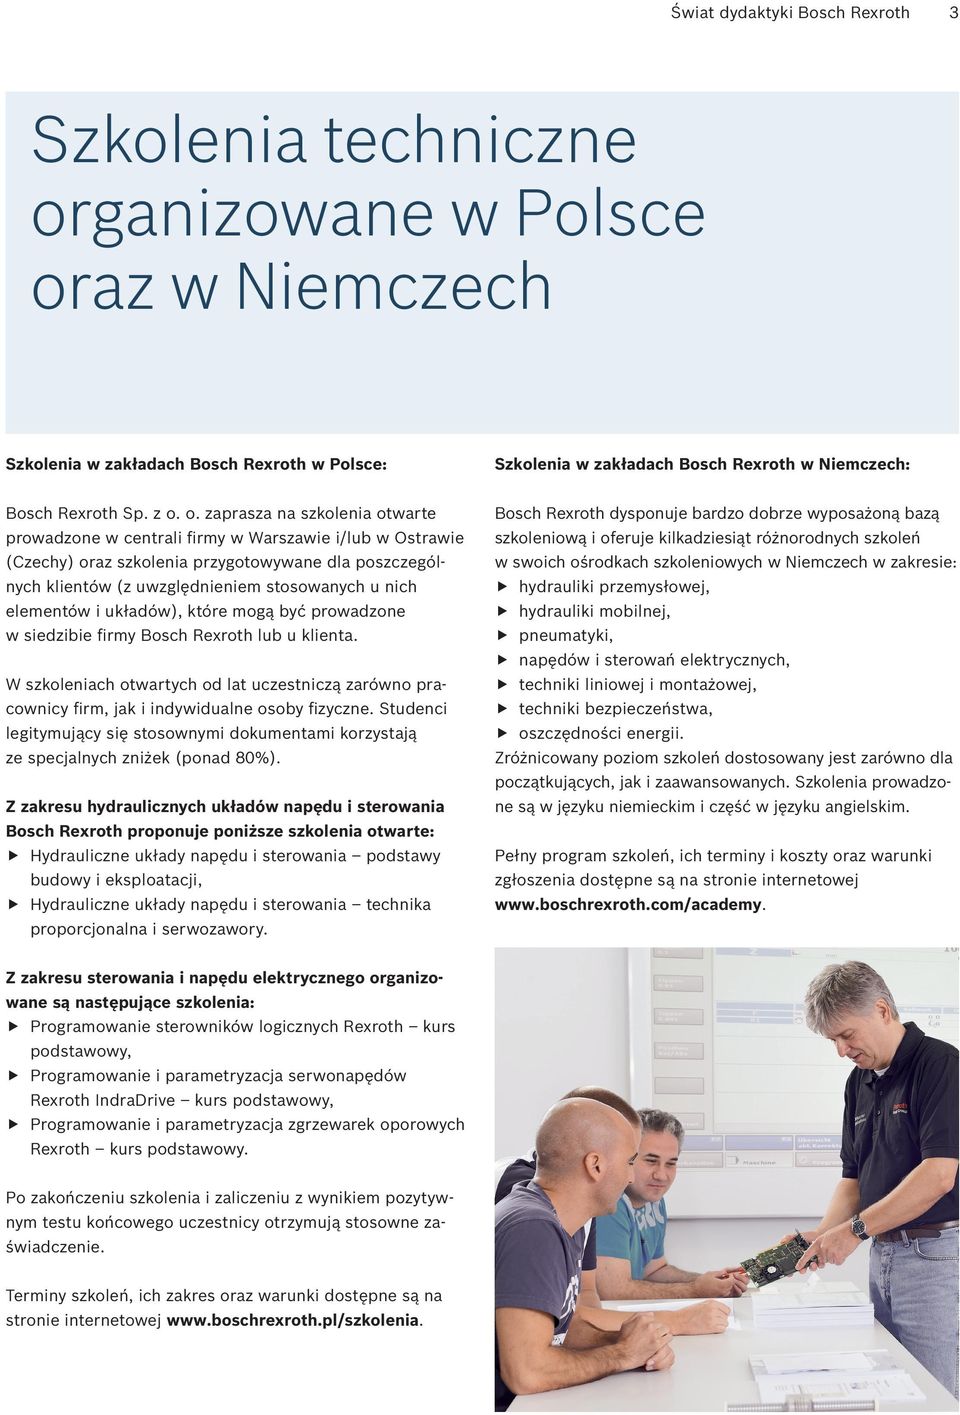 o. zaprasza na szkolenia otwarte prowadzone w centrali firmy w Warszawie i/lub w Ostrawie (Czechy) oraz szkolenia przygotowywane dla poszczególnych klientów (z uwzględnieniem stosowanych u nich